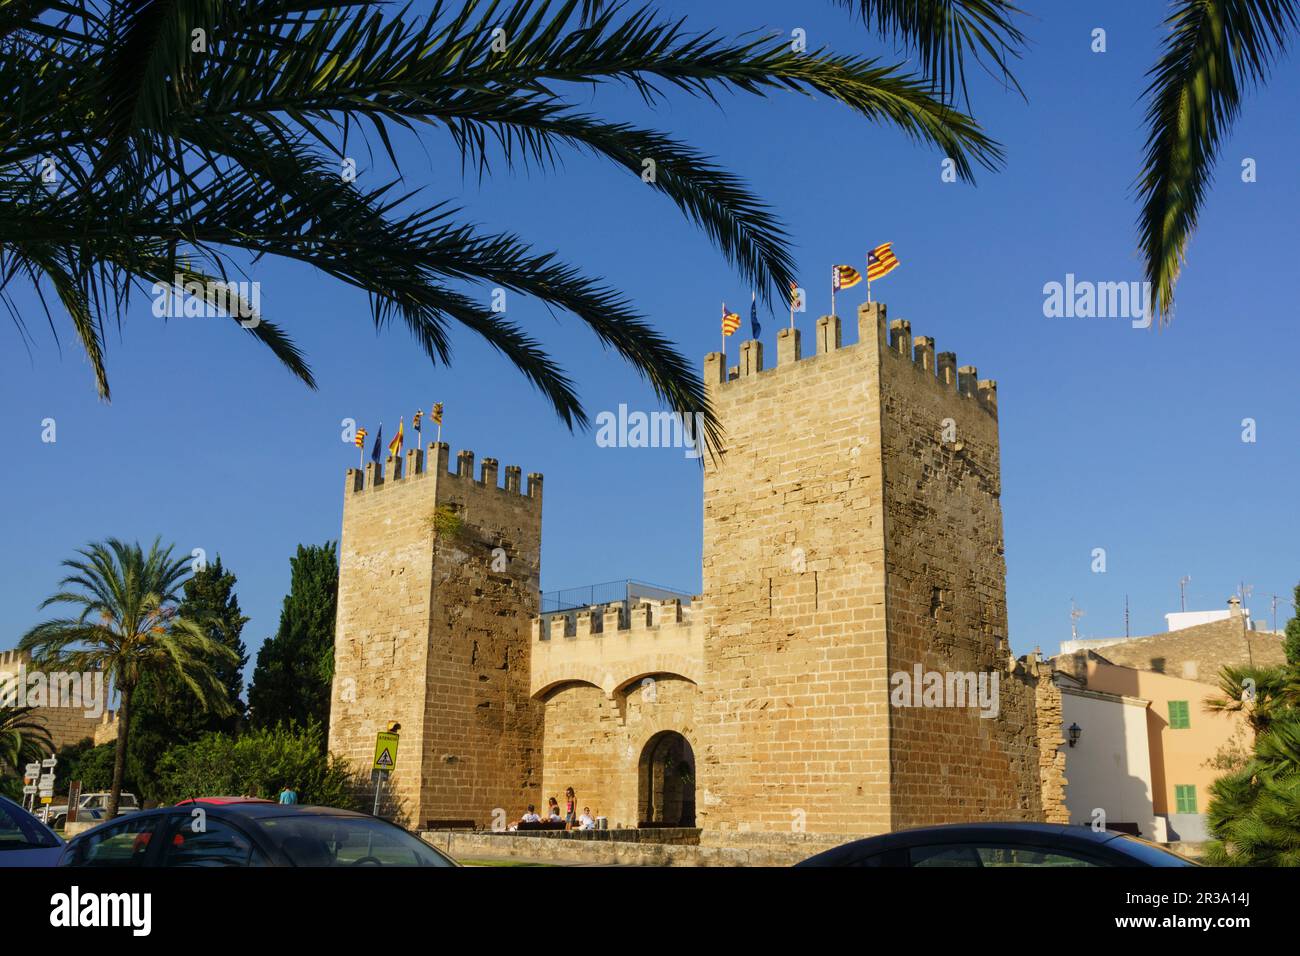 puerta de Mallorca - puerta de Sant Sebastia-, muralla medieval, siglo XIV, Alcudia,Mallorca, islas baleares, Spain. Stock Photo